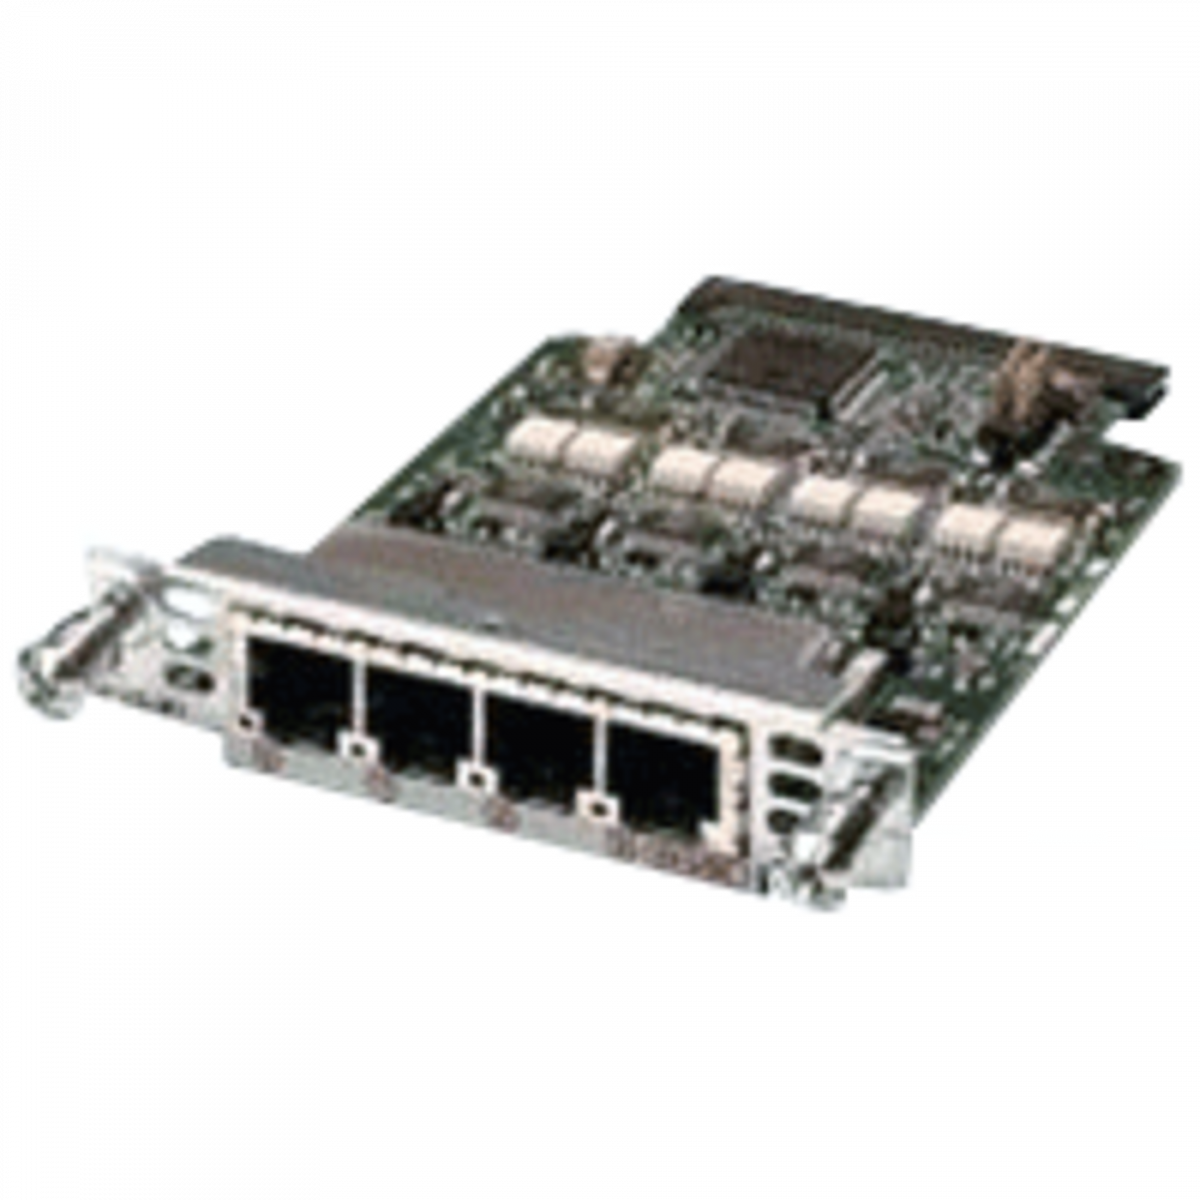 Модуль Cisco VIC2-4FXO